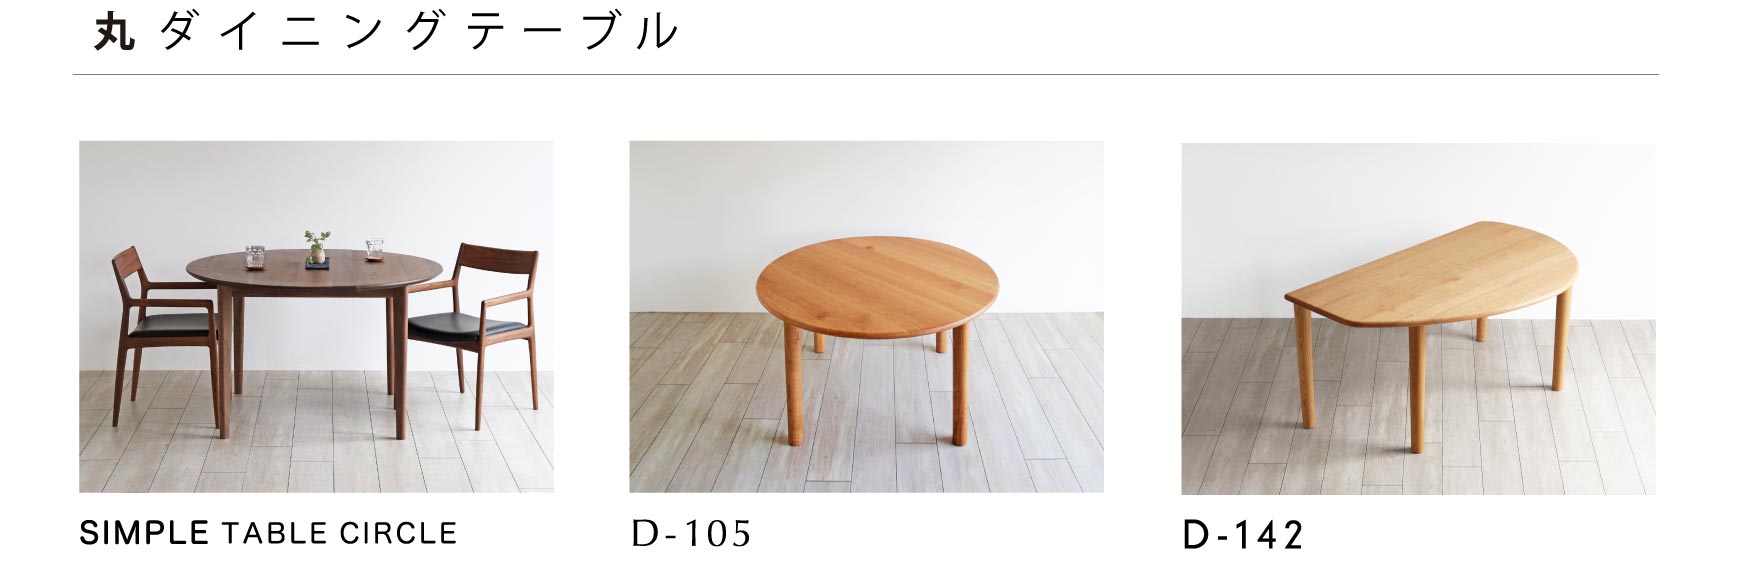 日本の職人が丁寧につくり上げる上質なダイニングテーブル